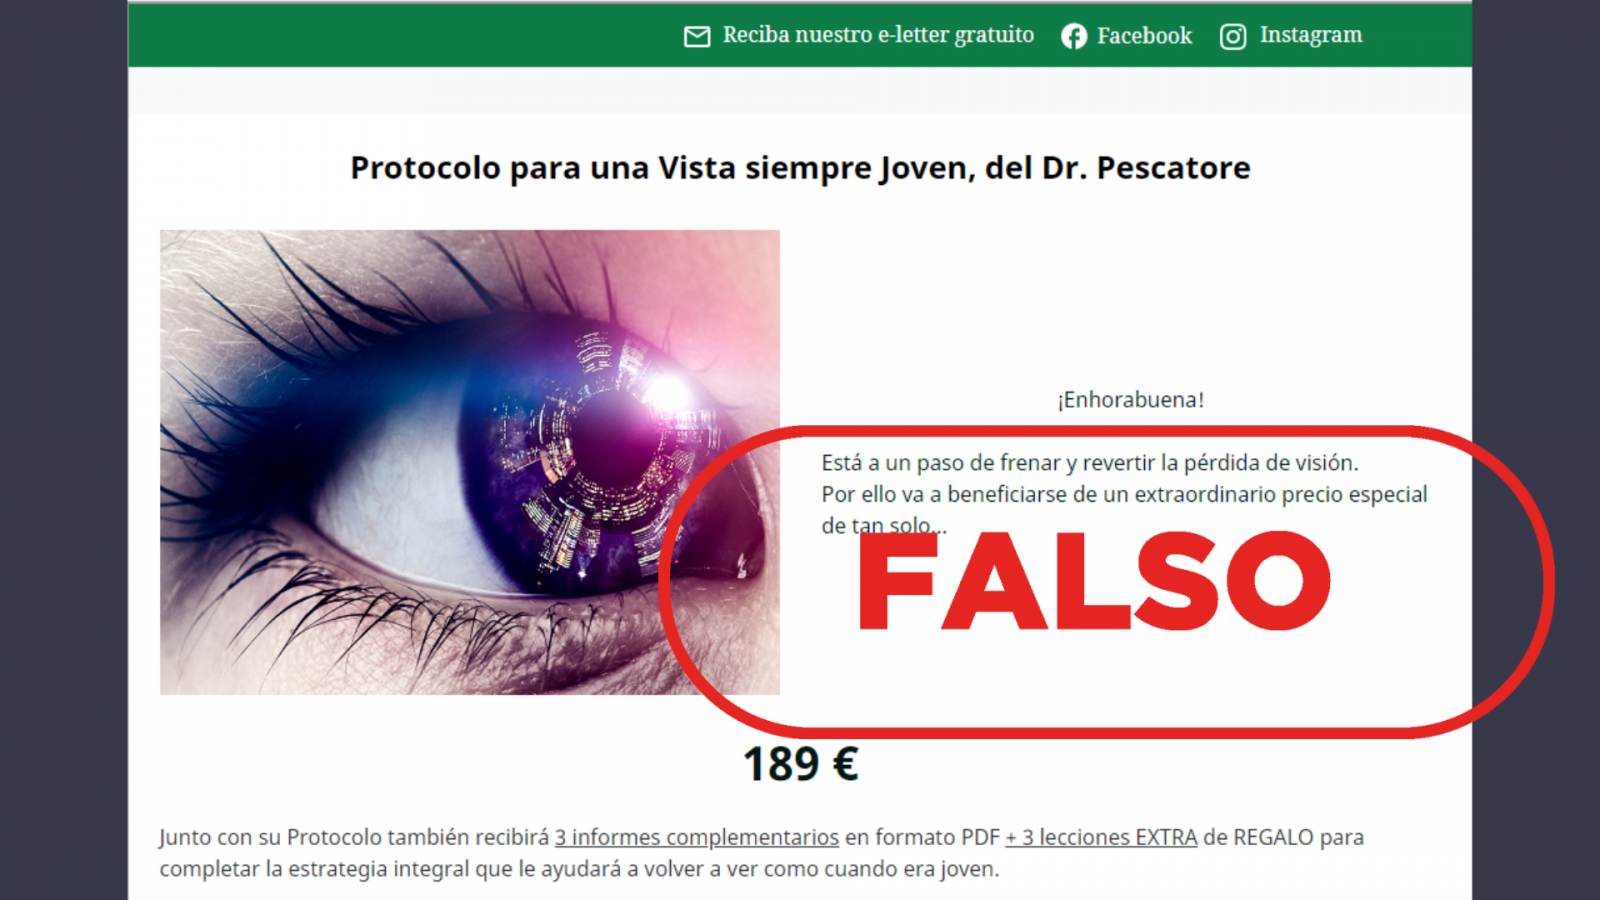 Portal web que difunde un falso ¿protocolo¿ que promete ¿frenar y revertir la pérdida de visión¿ de las enfermedades más graves de la vista, con el sello 'Falso' en rojo